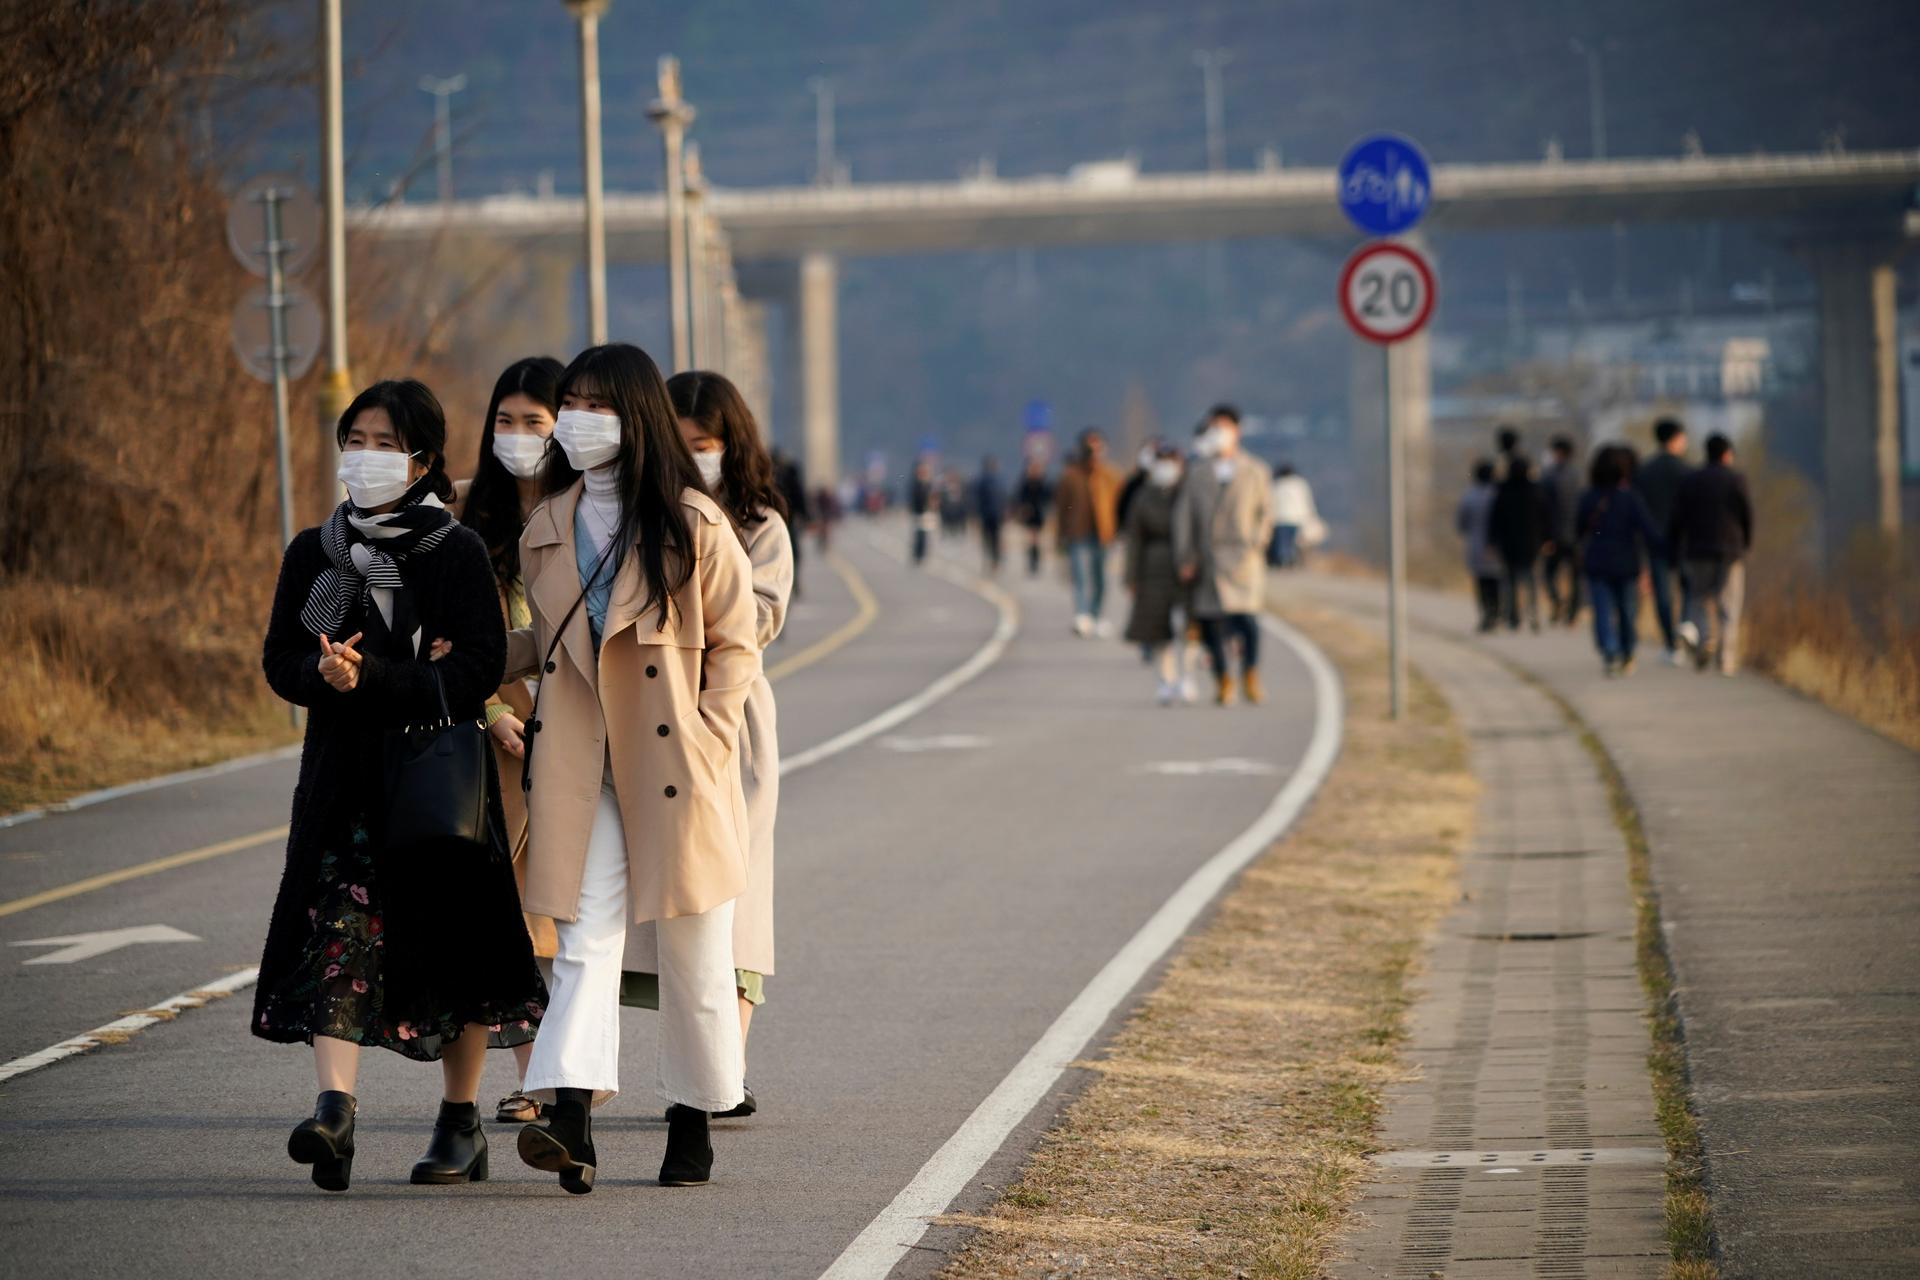 Mayor in virus-hit South Korean city says outbreak may be slowing